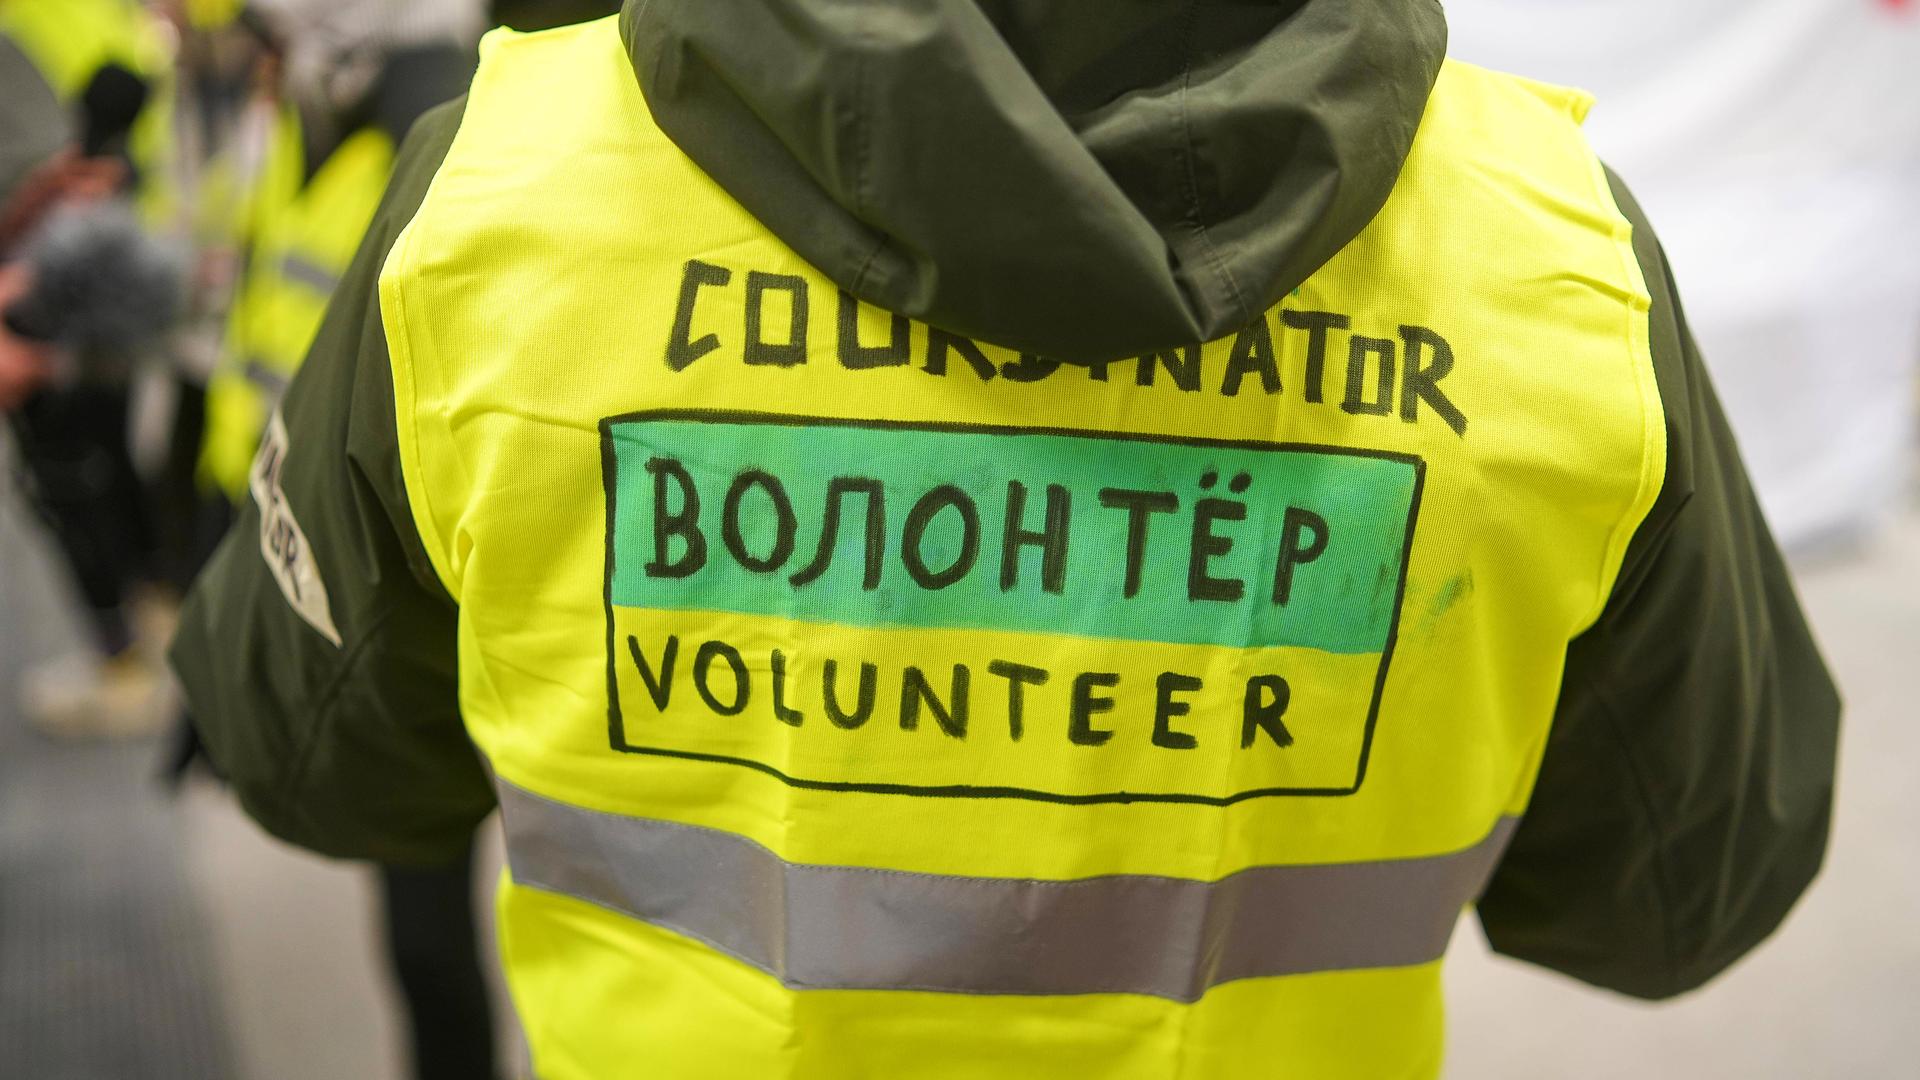 Rückenansicht einer Person in einer neon gelben Weste, mit der Aufschrift "Volunteer", in englischer und auch in russischer Sprache.